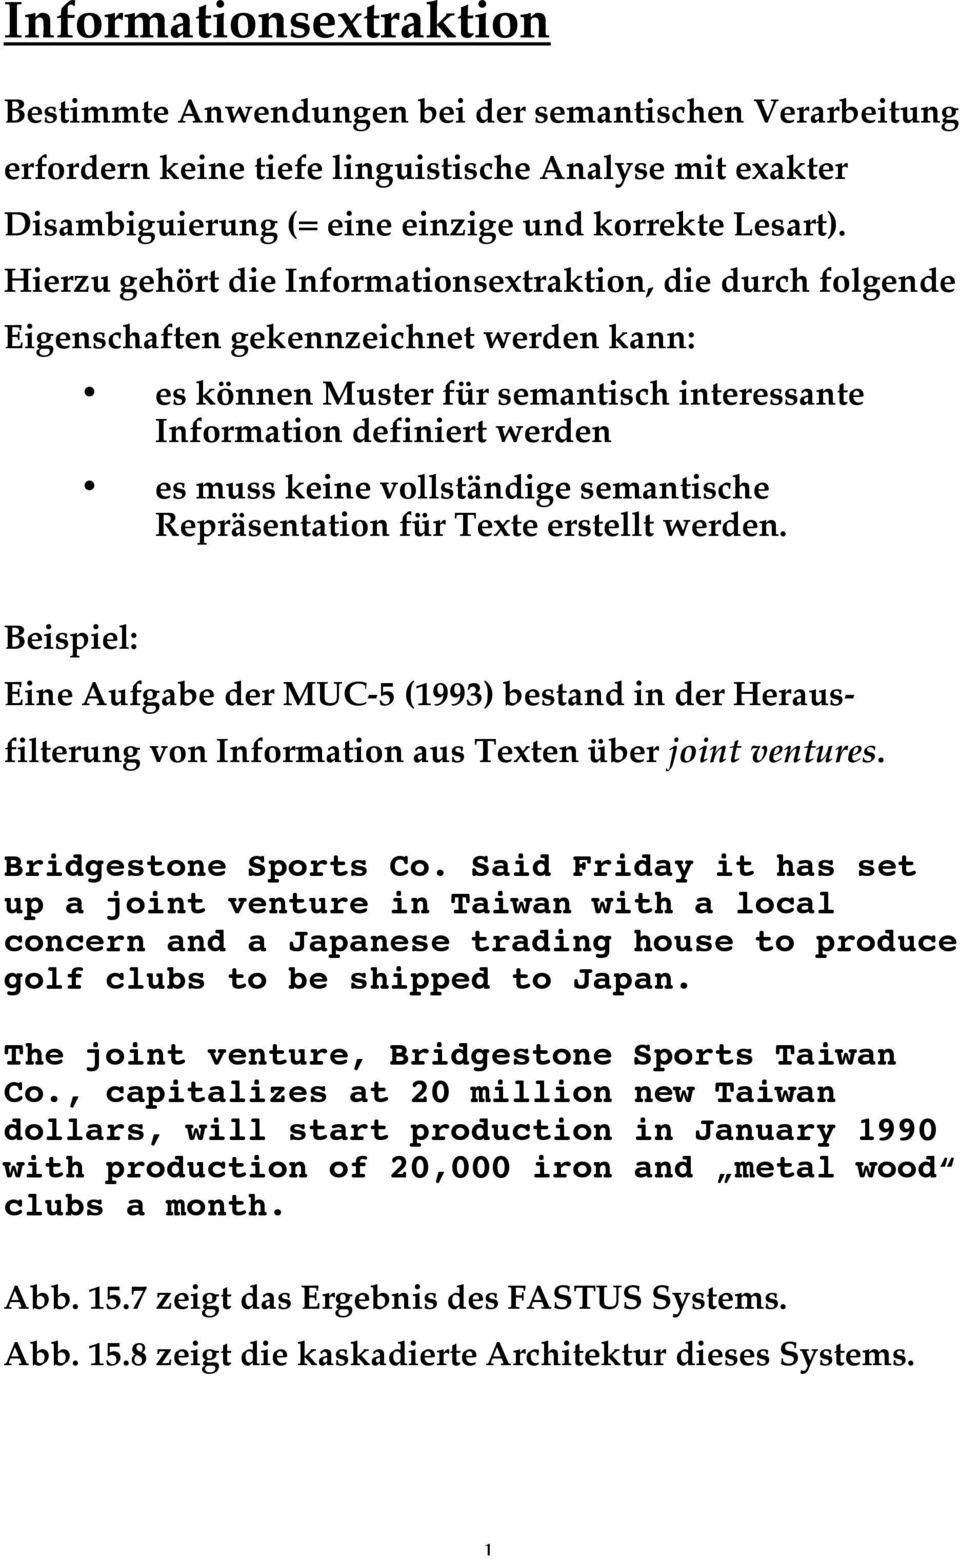 vollständige semantische Repräsentation für Texte erstellt werden. Beispiel: Eine Aufgabe der MUC-5 (1993) bestand in der Herausfilterung von Information aus Texten über joint ventures.